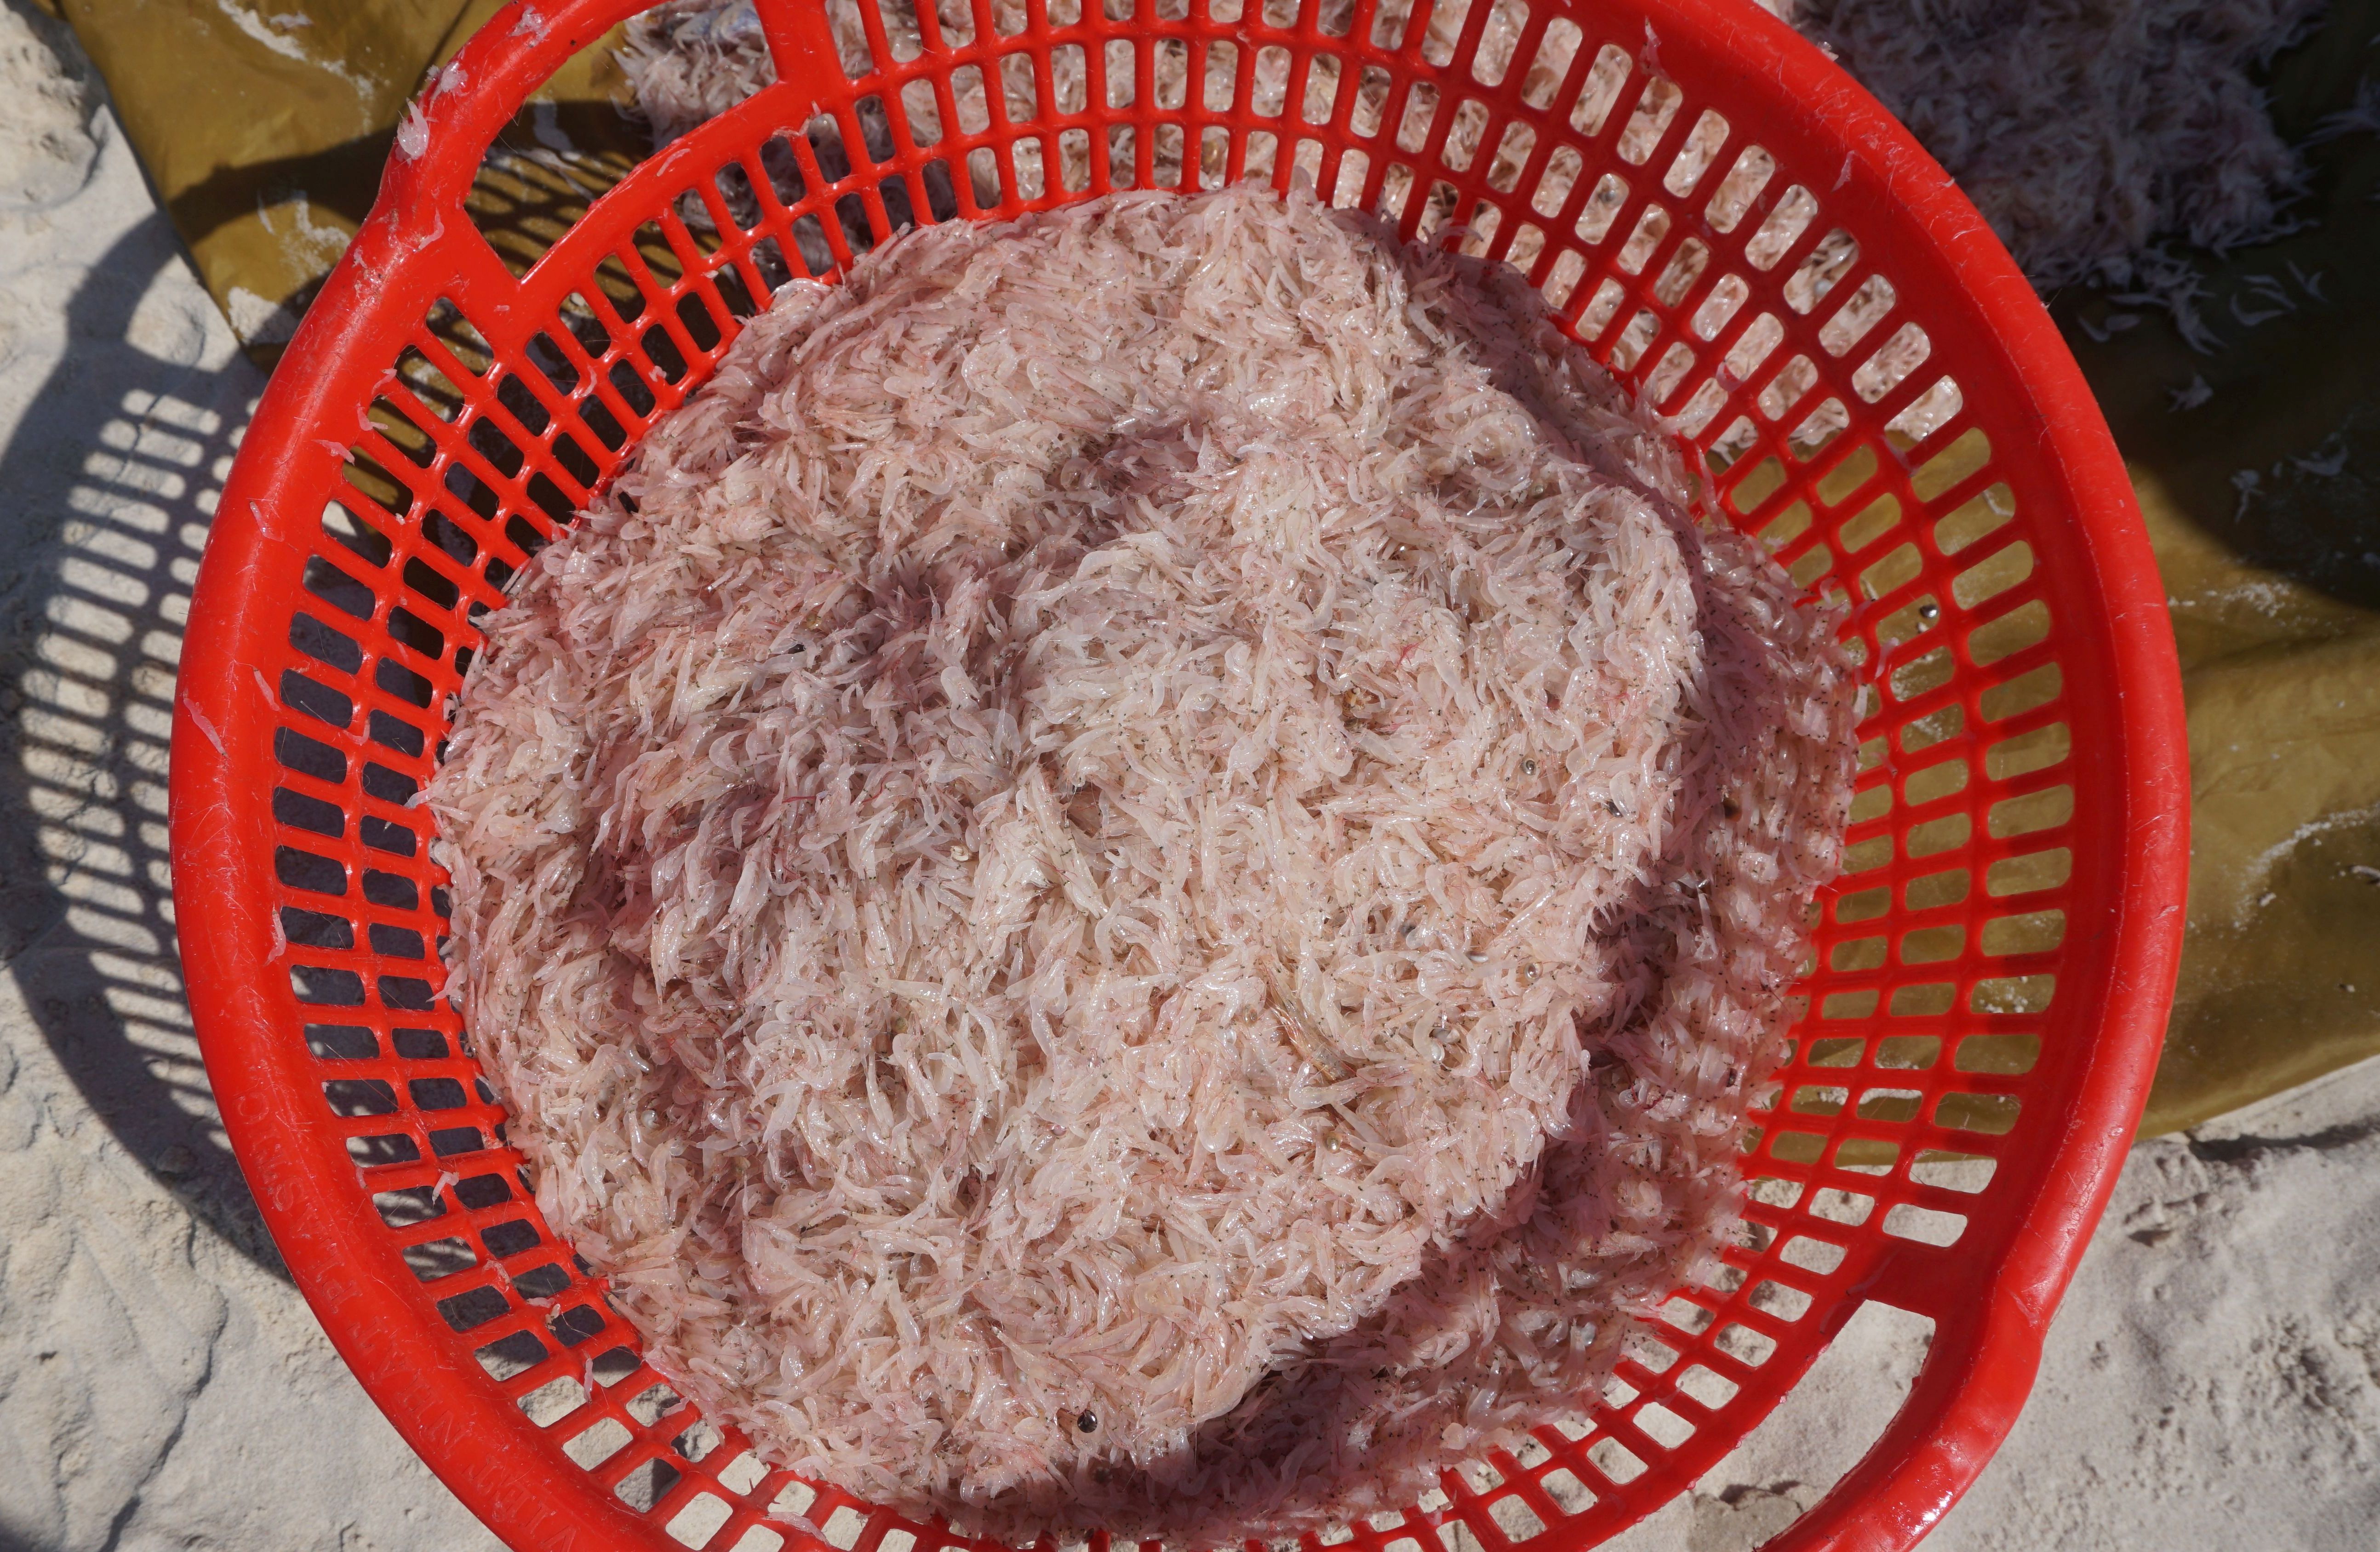 Con ruốc tươi ngon, ngoài ăn tươi còn chế biến được nhiều món đặc sản của vùng biển Quảng Bình.